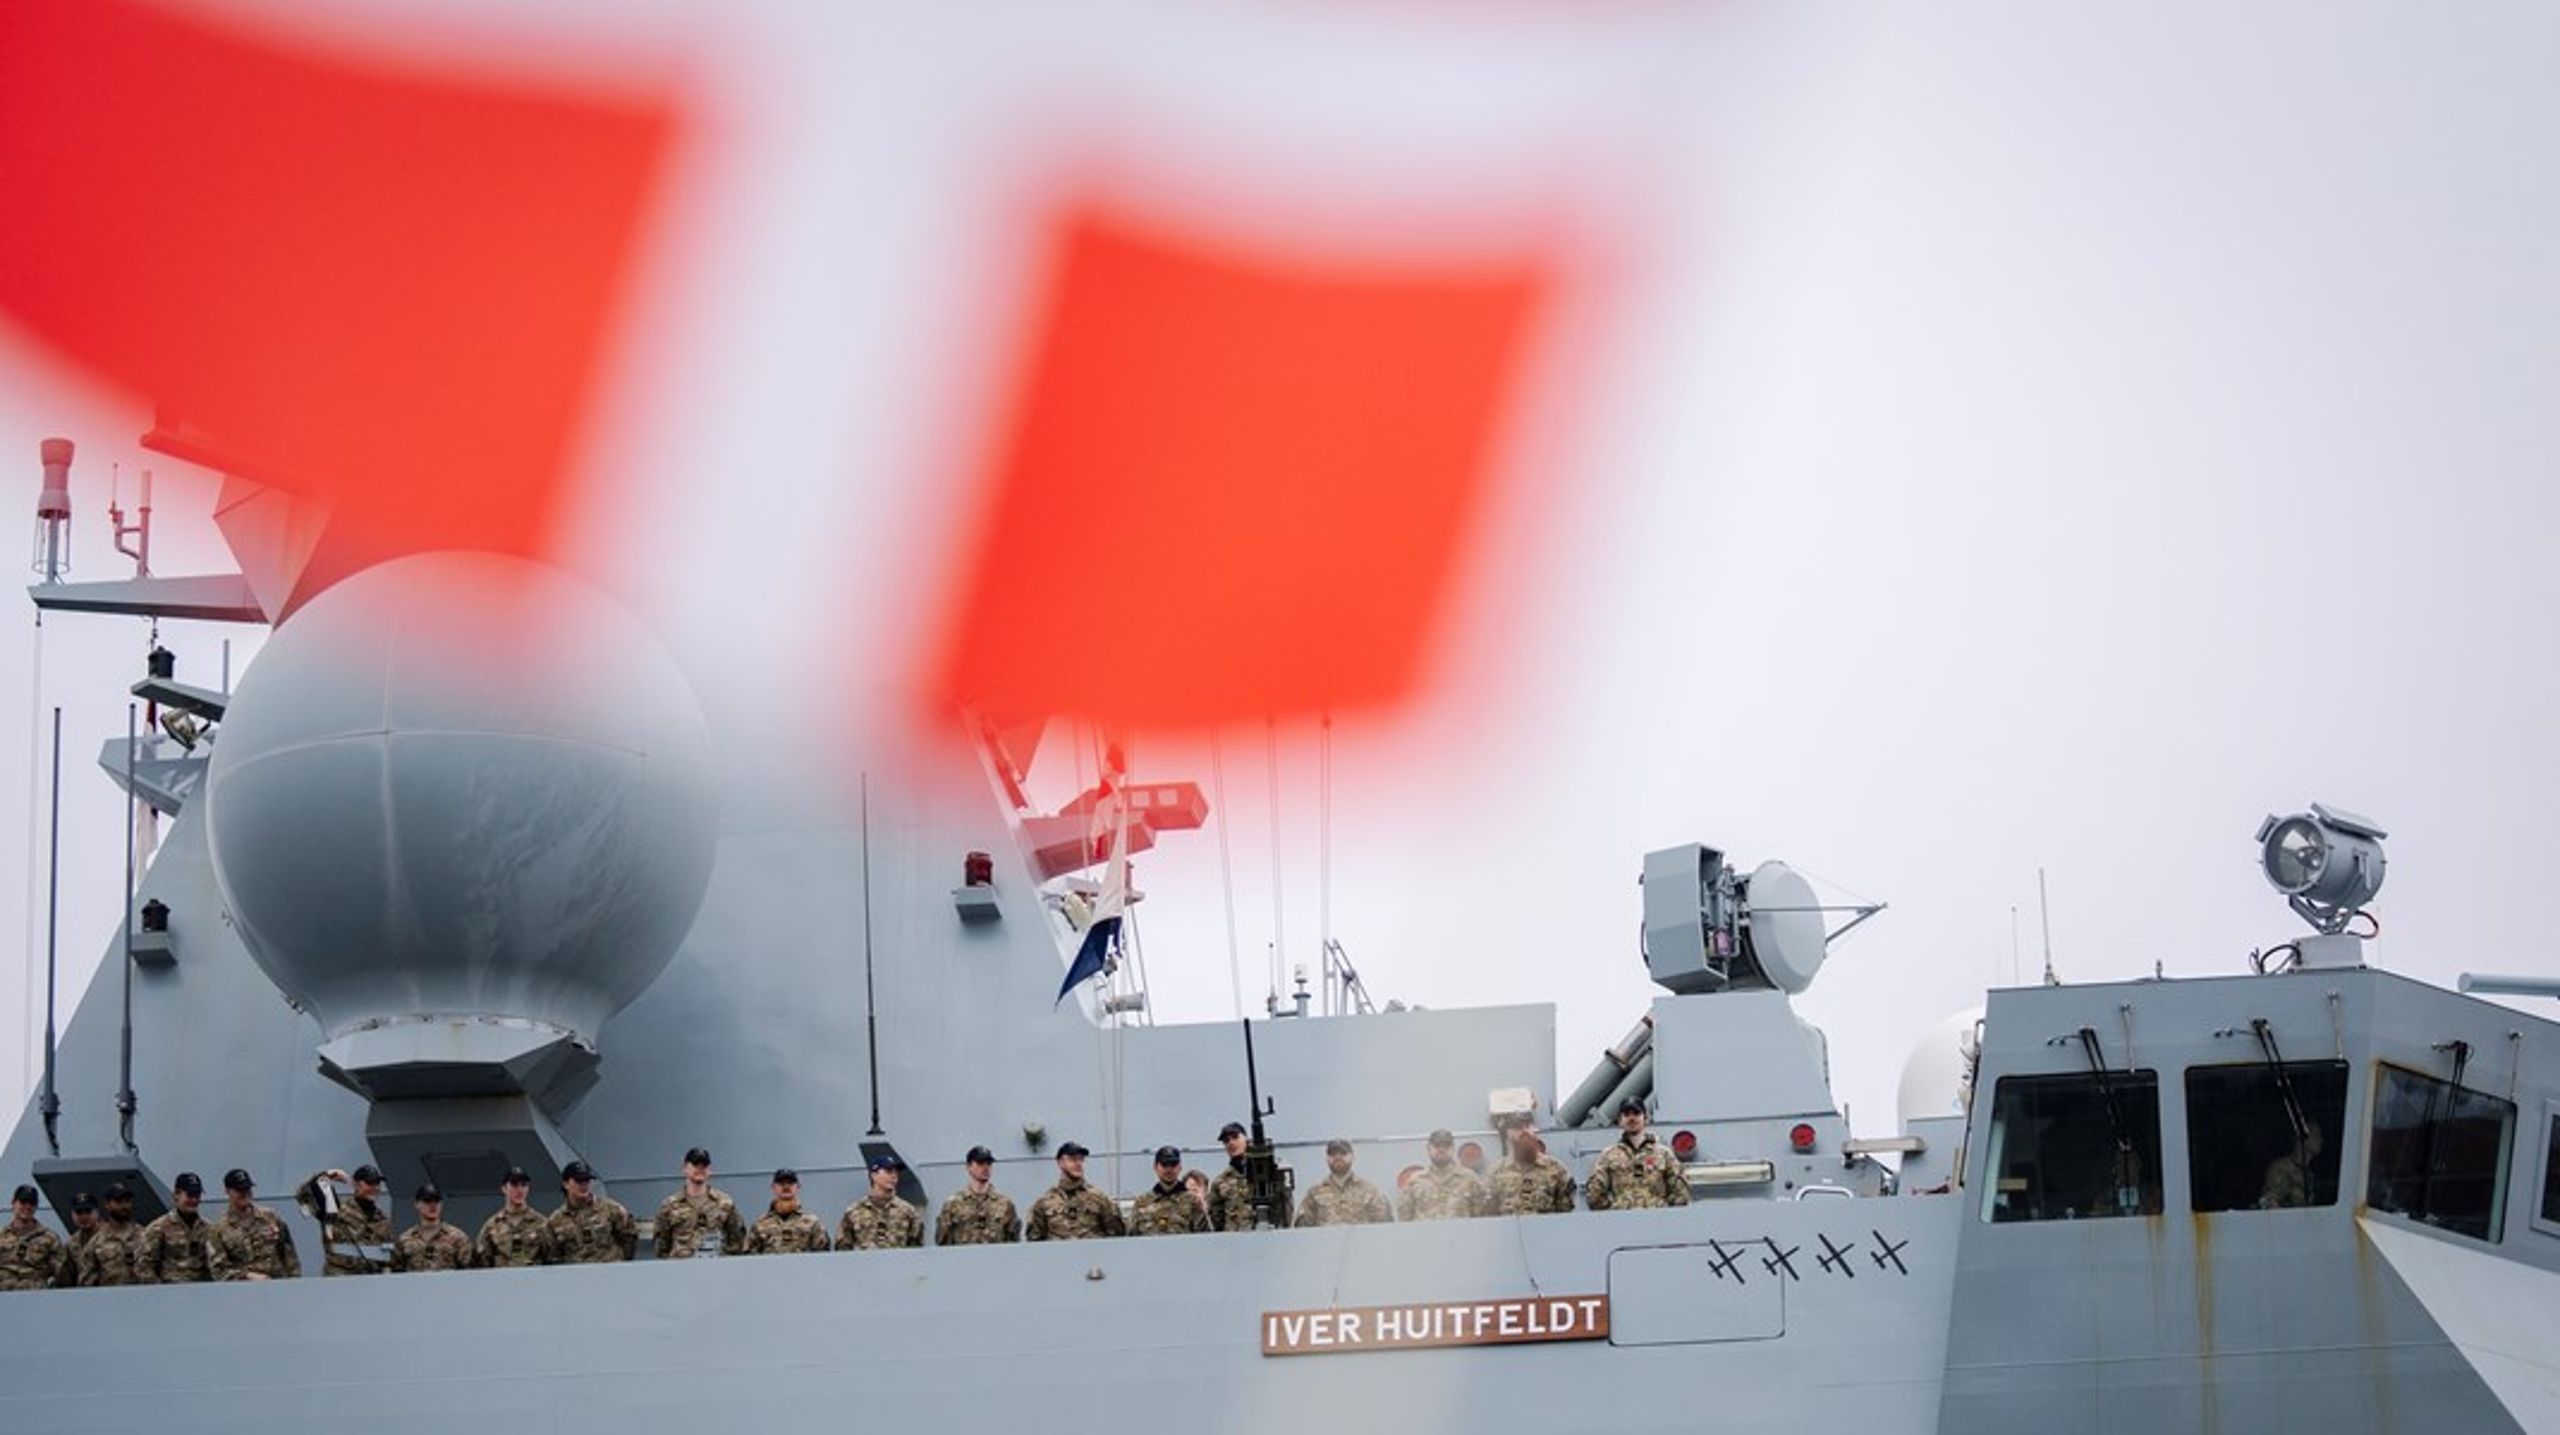 Det globale vinder fokus sammen med dagsordenen i Kina, Indien, Indonesien, Japan og Sydkorea. Udfordringen i Det Røde Hav, Mellemøsten og krigen i Ukraine.  EU beskytter vores søfarende og skibe, skriver Bjarne Løf Henriksen.